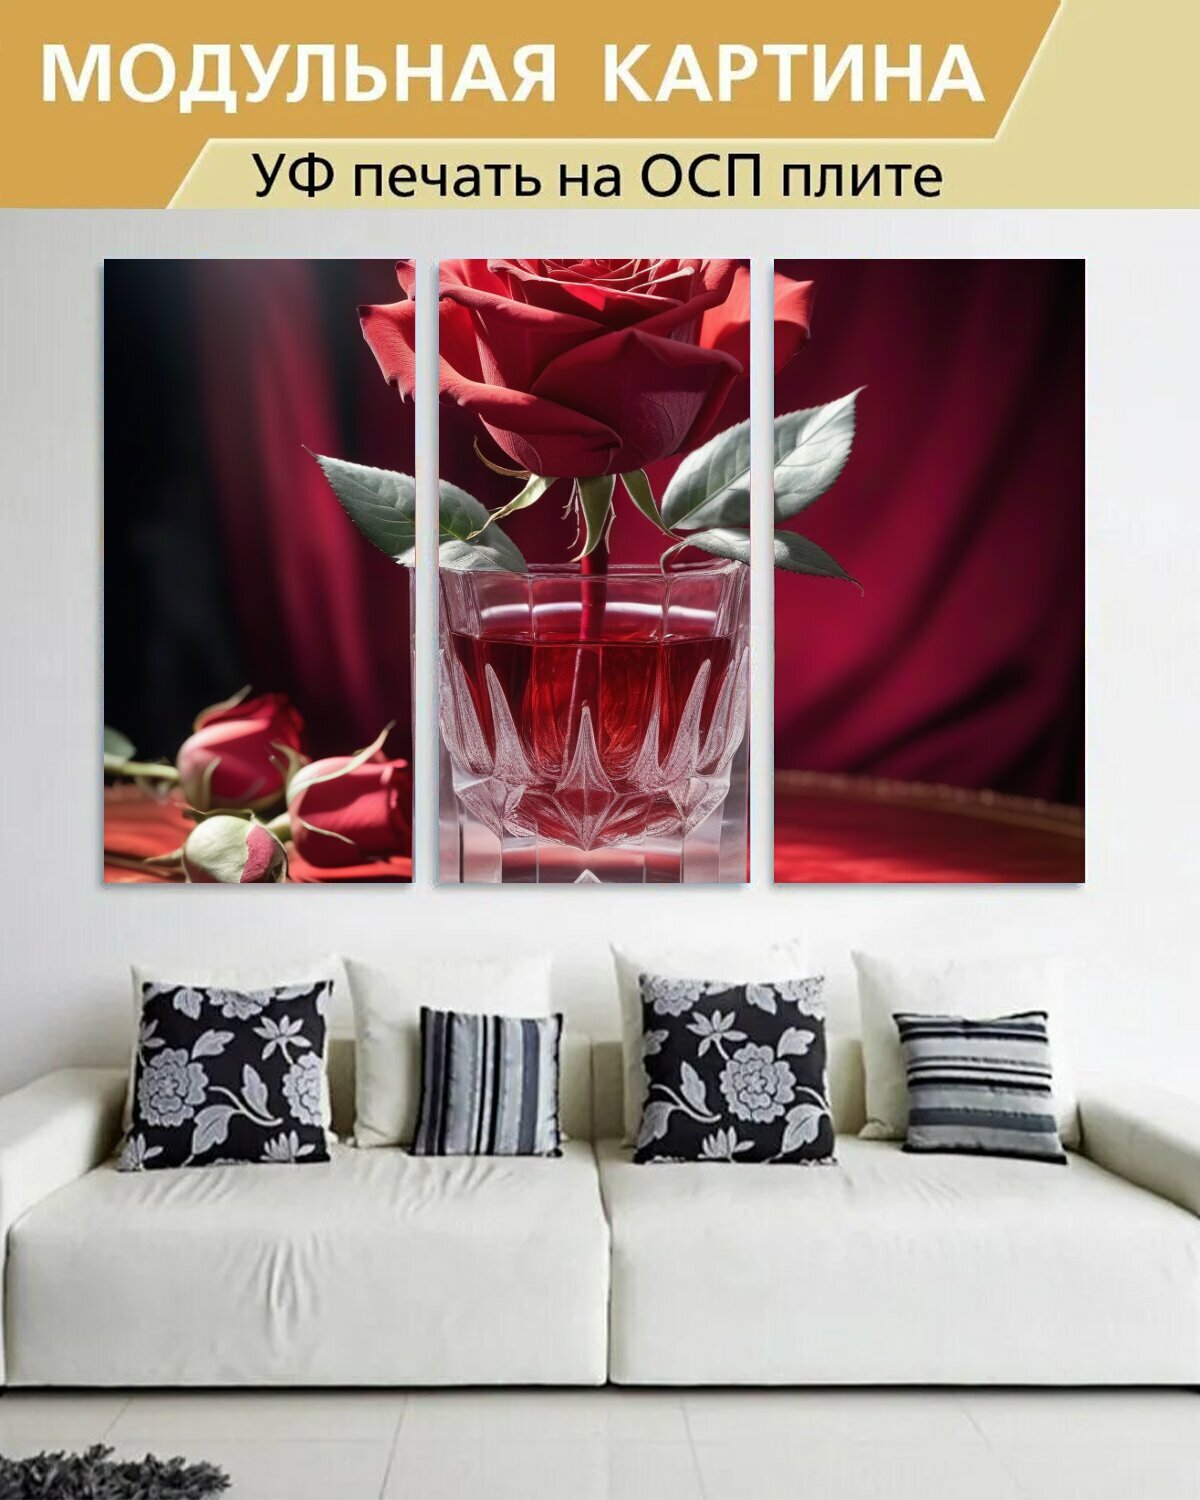 Модульная картина на ОСП девушкам "Лепестки, шипы, роза, стакан, красный" 188x125 см. 3 части для интерьера на стену